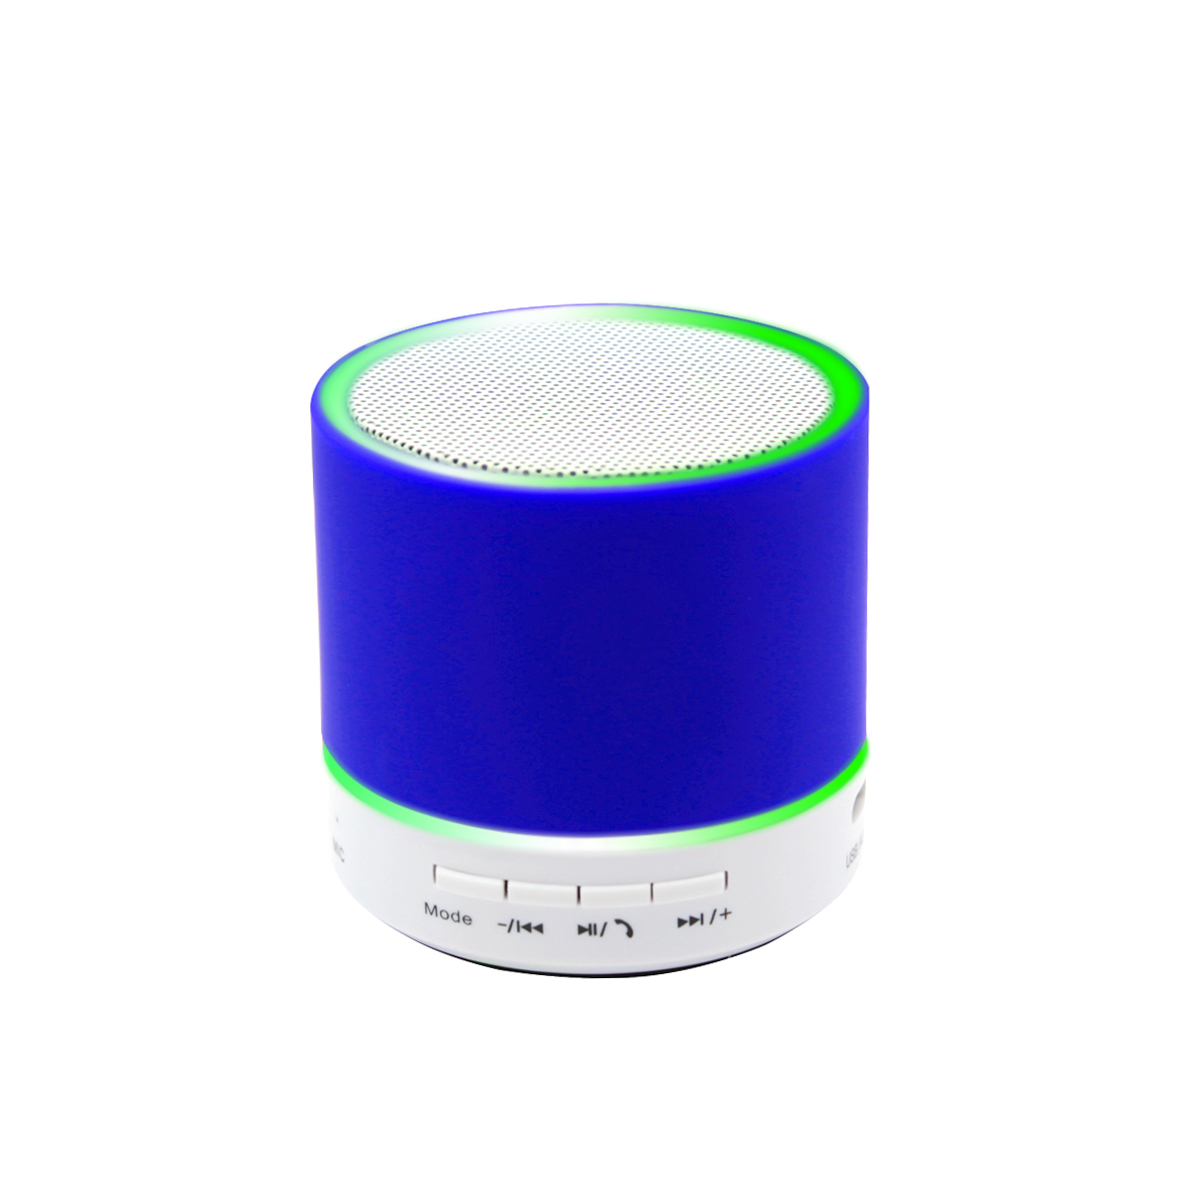 Беспроводная Bluetooth колонка Attilan (BLTS01), синяя (Фото)